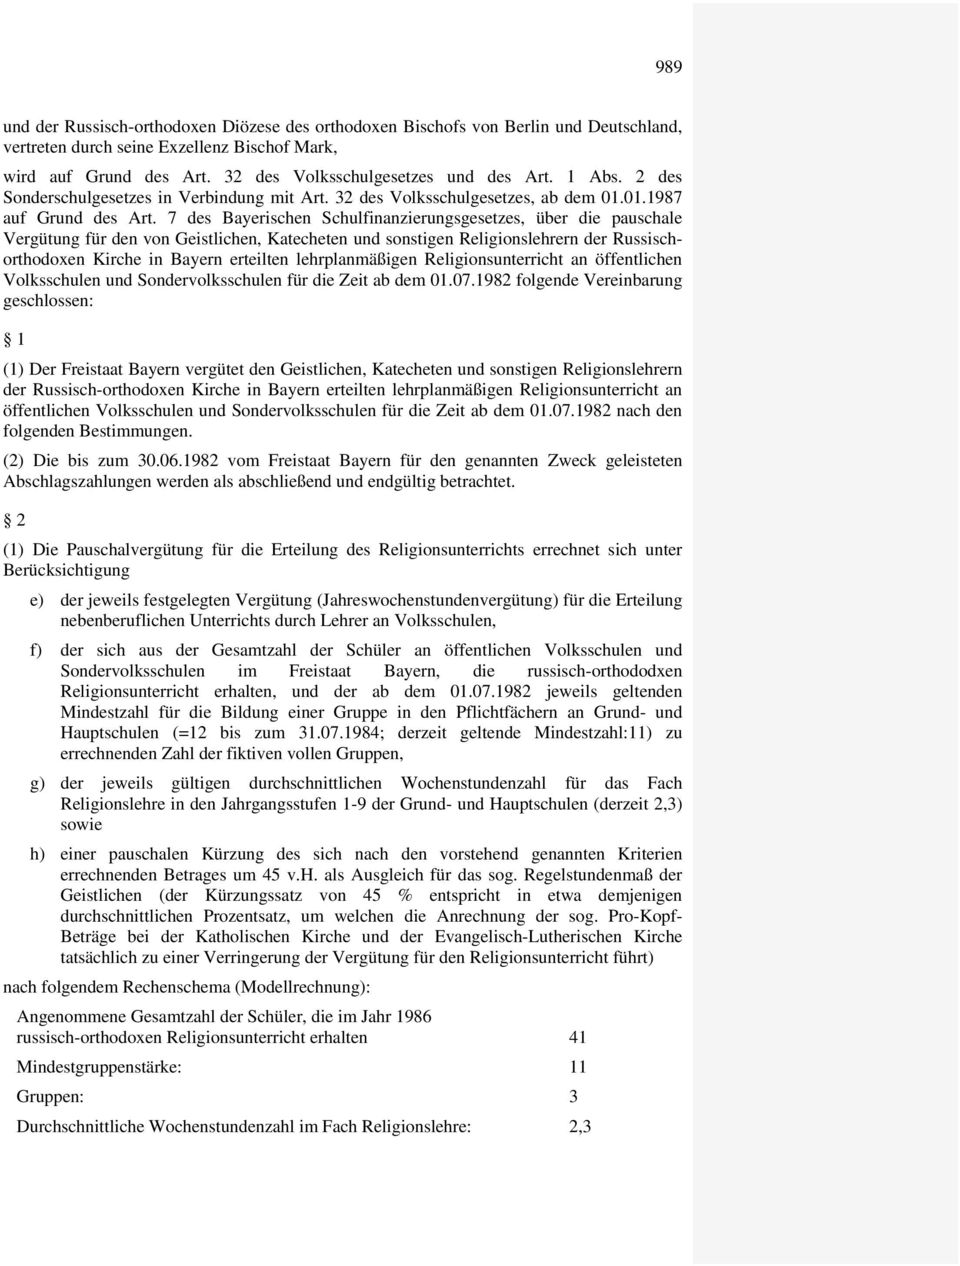 7 des Bayerischen Schulfinanzierungsgesetzes, über die pauschale Vergütung für den von Geistlichen, Katecheten und sonstigen Religionslehrern der Russischorthodoxen Kirche in Bayern erteilten